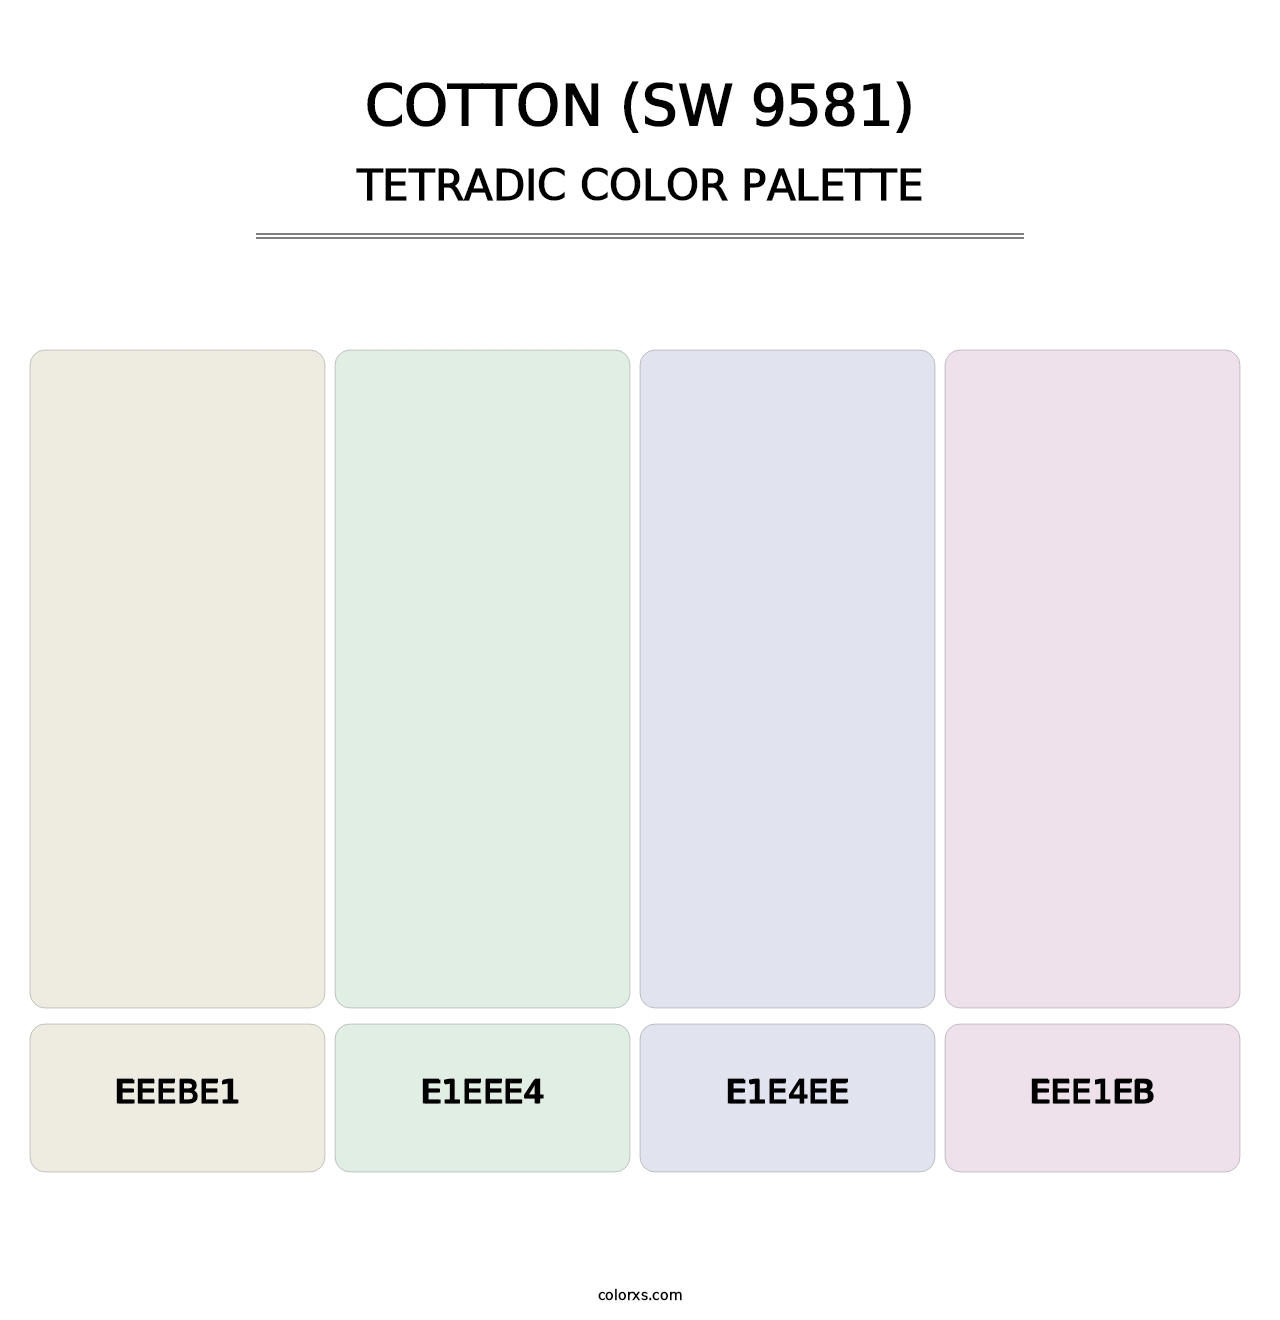 Cotton (SW 9581) - Tetradic Color Palette